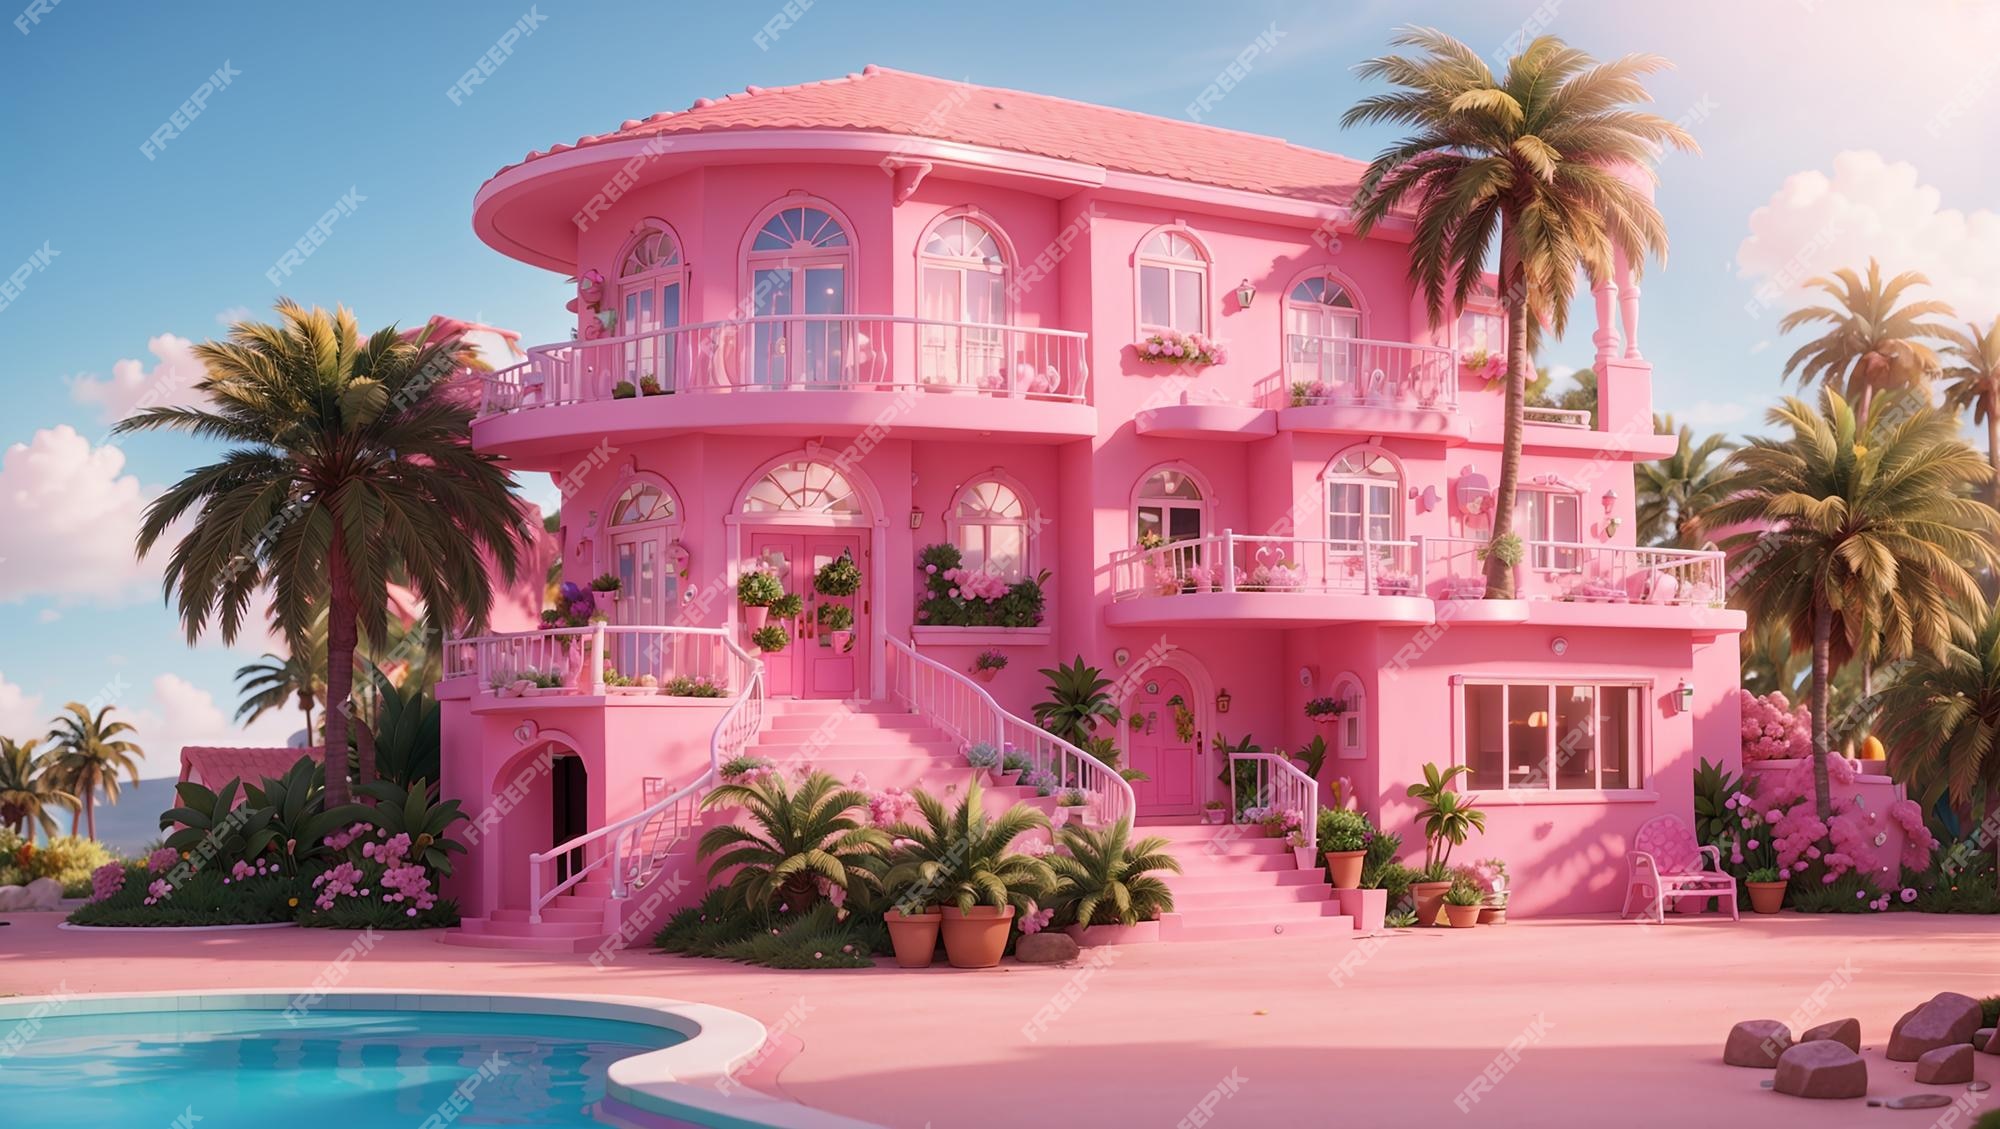 Casa dos sonhos barbie com piscina